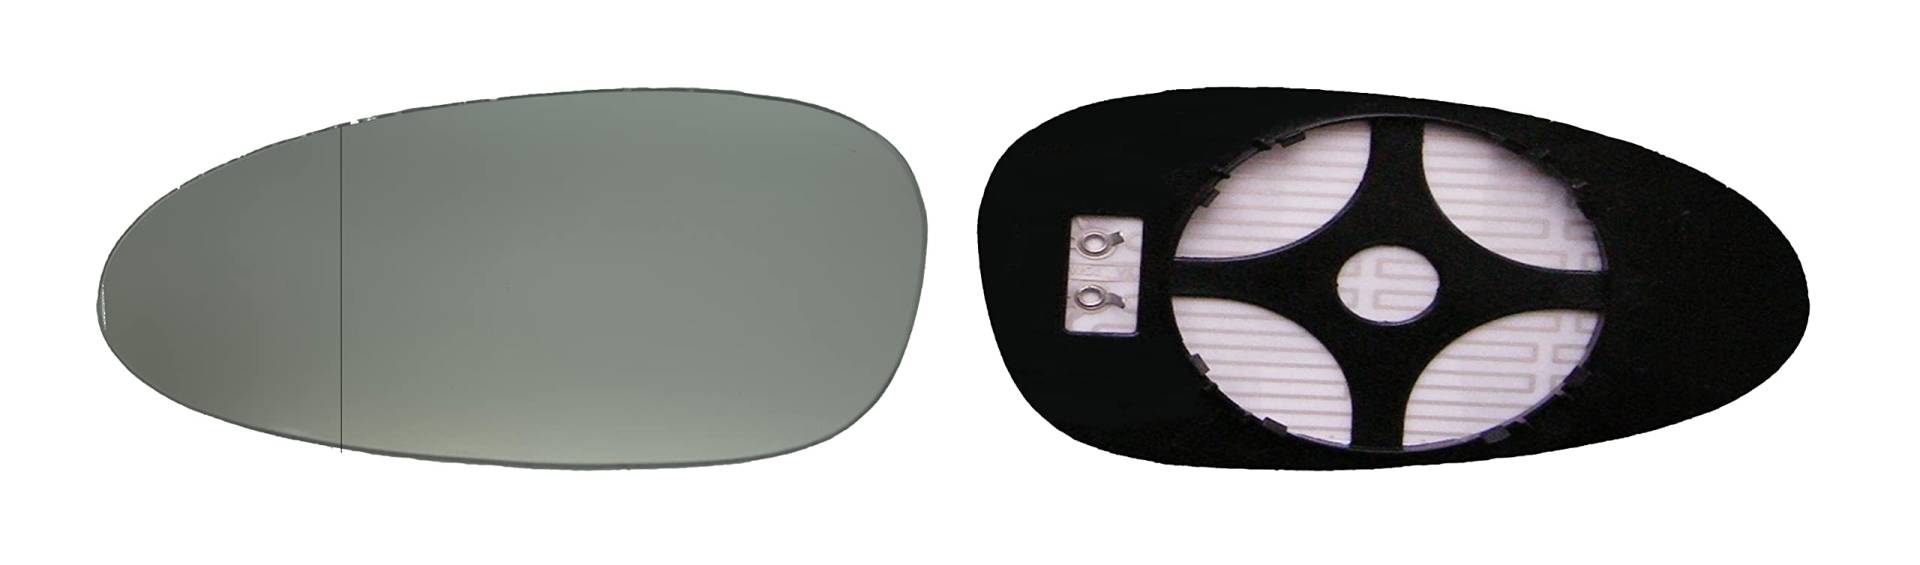 ASG Technik Außenspiegel Spiegelglas Ersatzglas kompatibel mit Porsche 911, 997 Cayman, 997 Boxster Baujahr 2005 - 2009 von ASG Technik